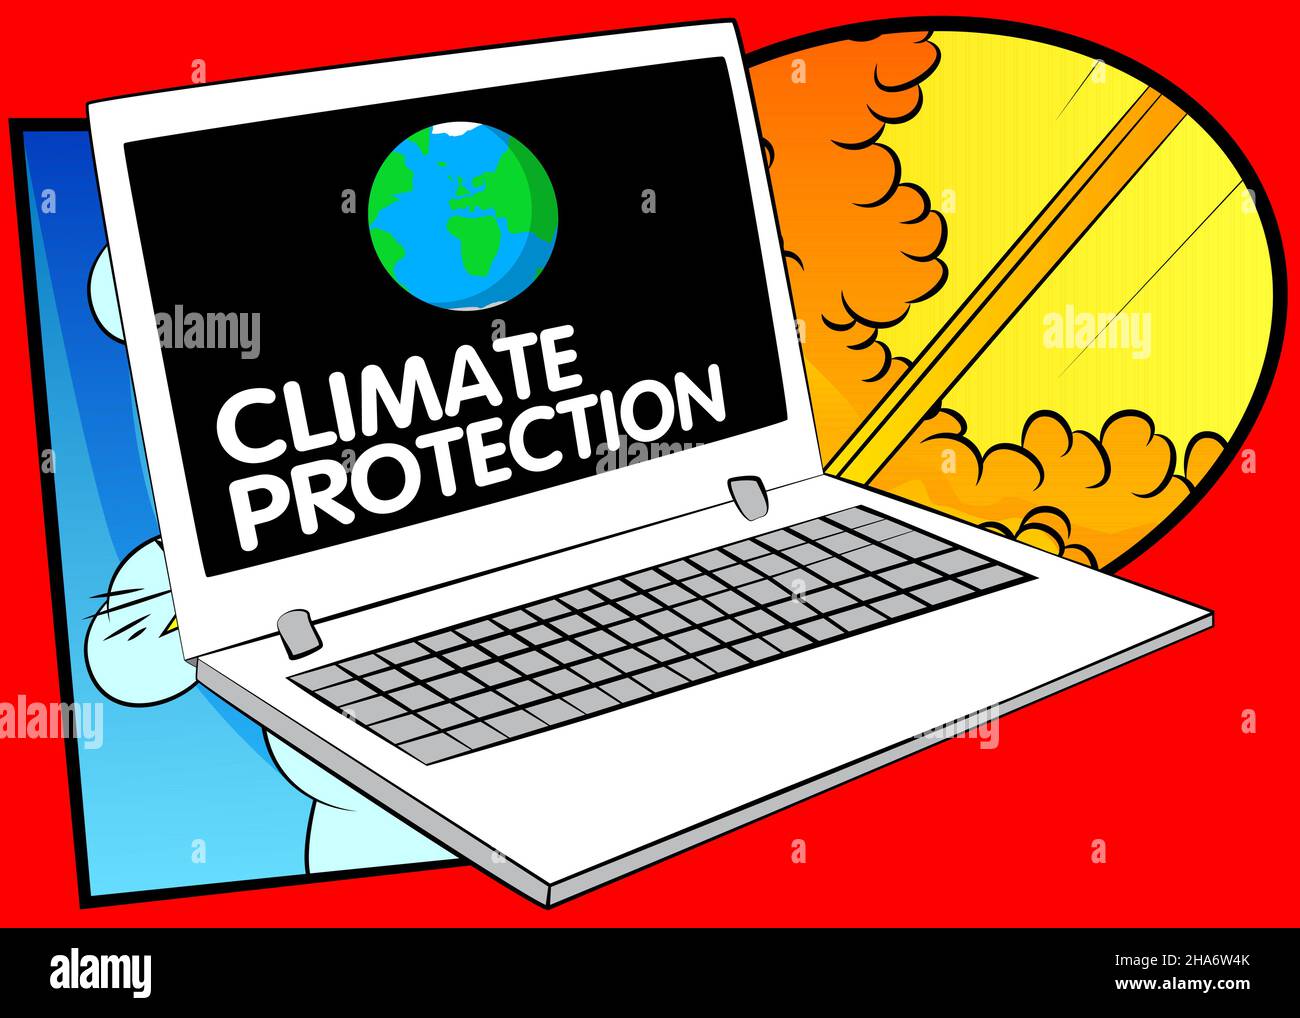 Laptop mit dem Wort Klimaschutz auf dem Bildschirm. Vektorgrafik Cartoon-Illustration. Stock Vektor